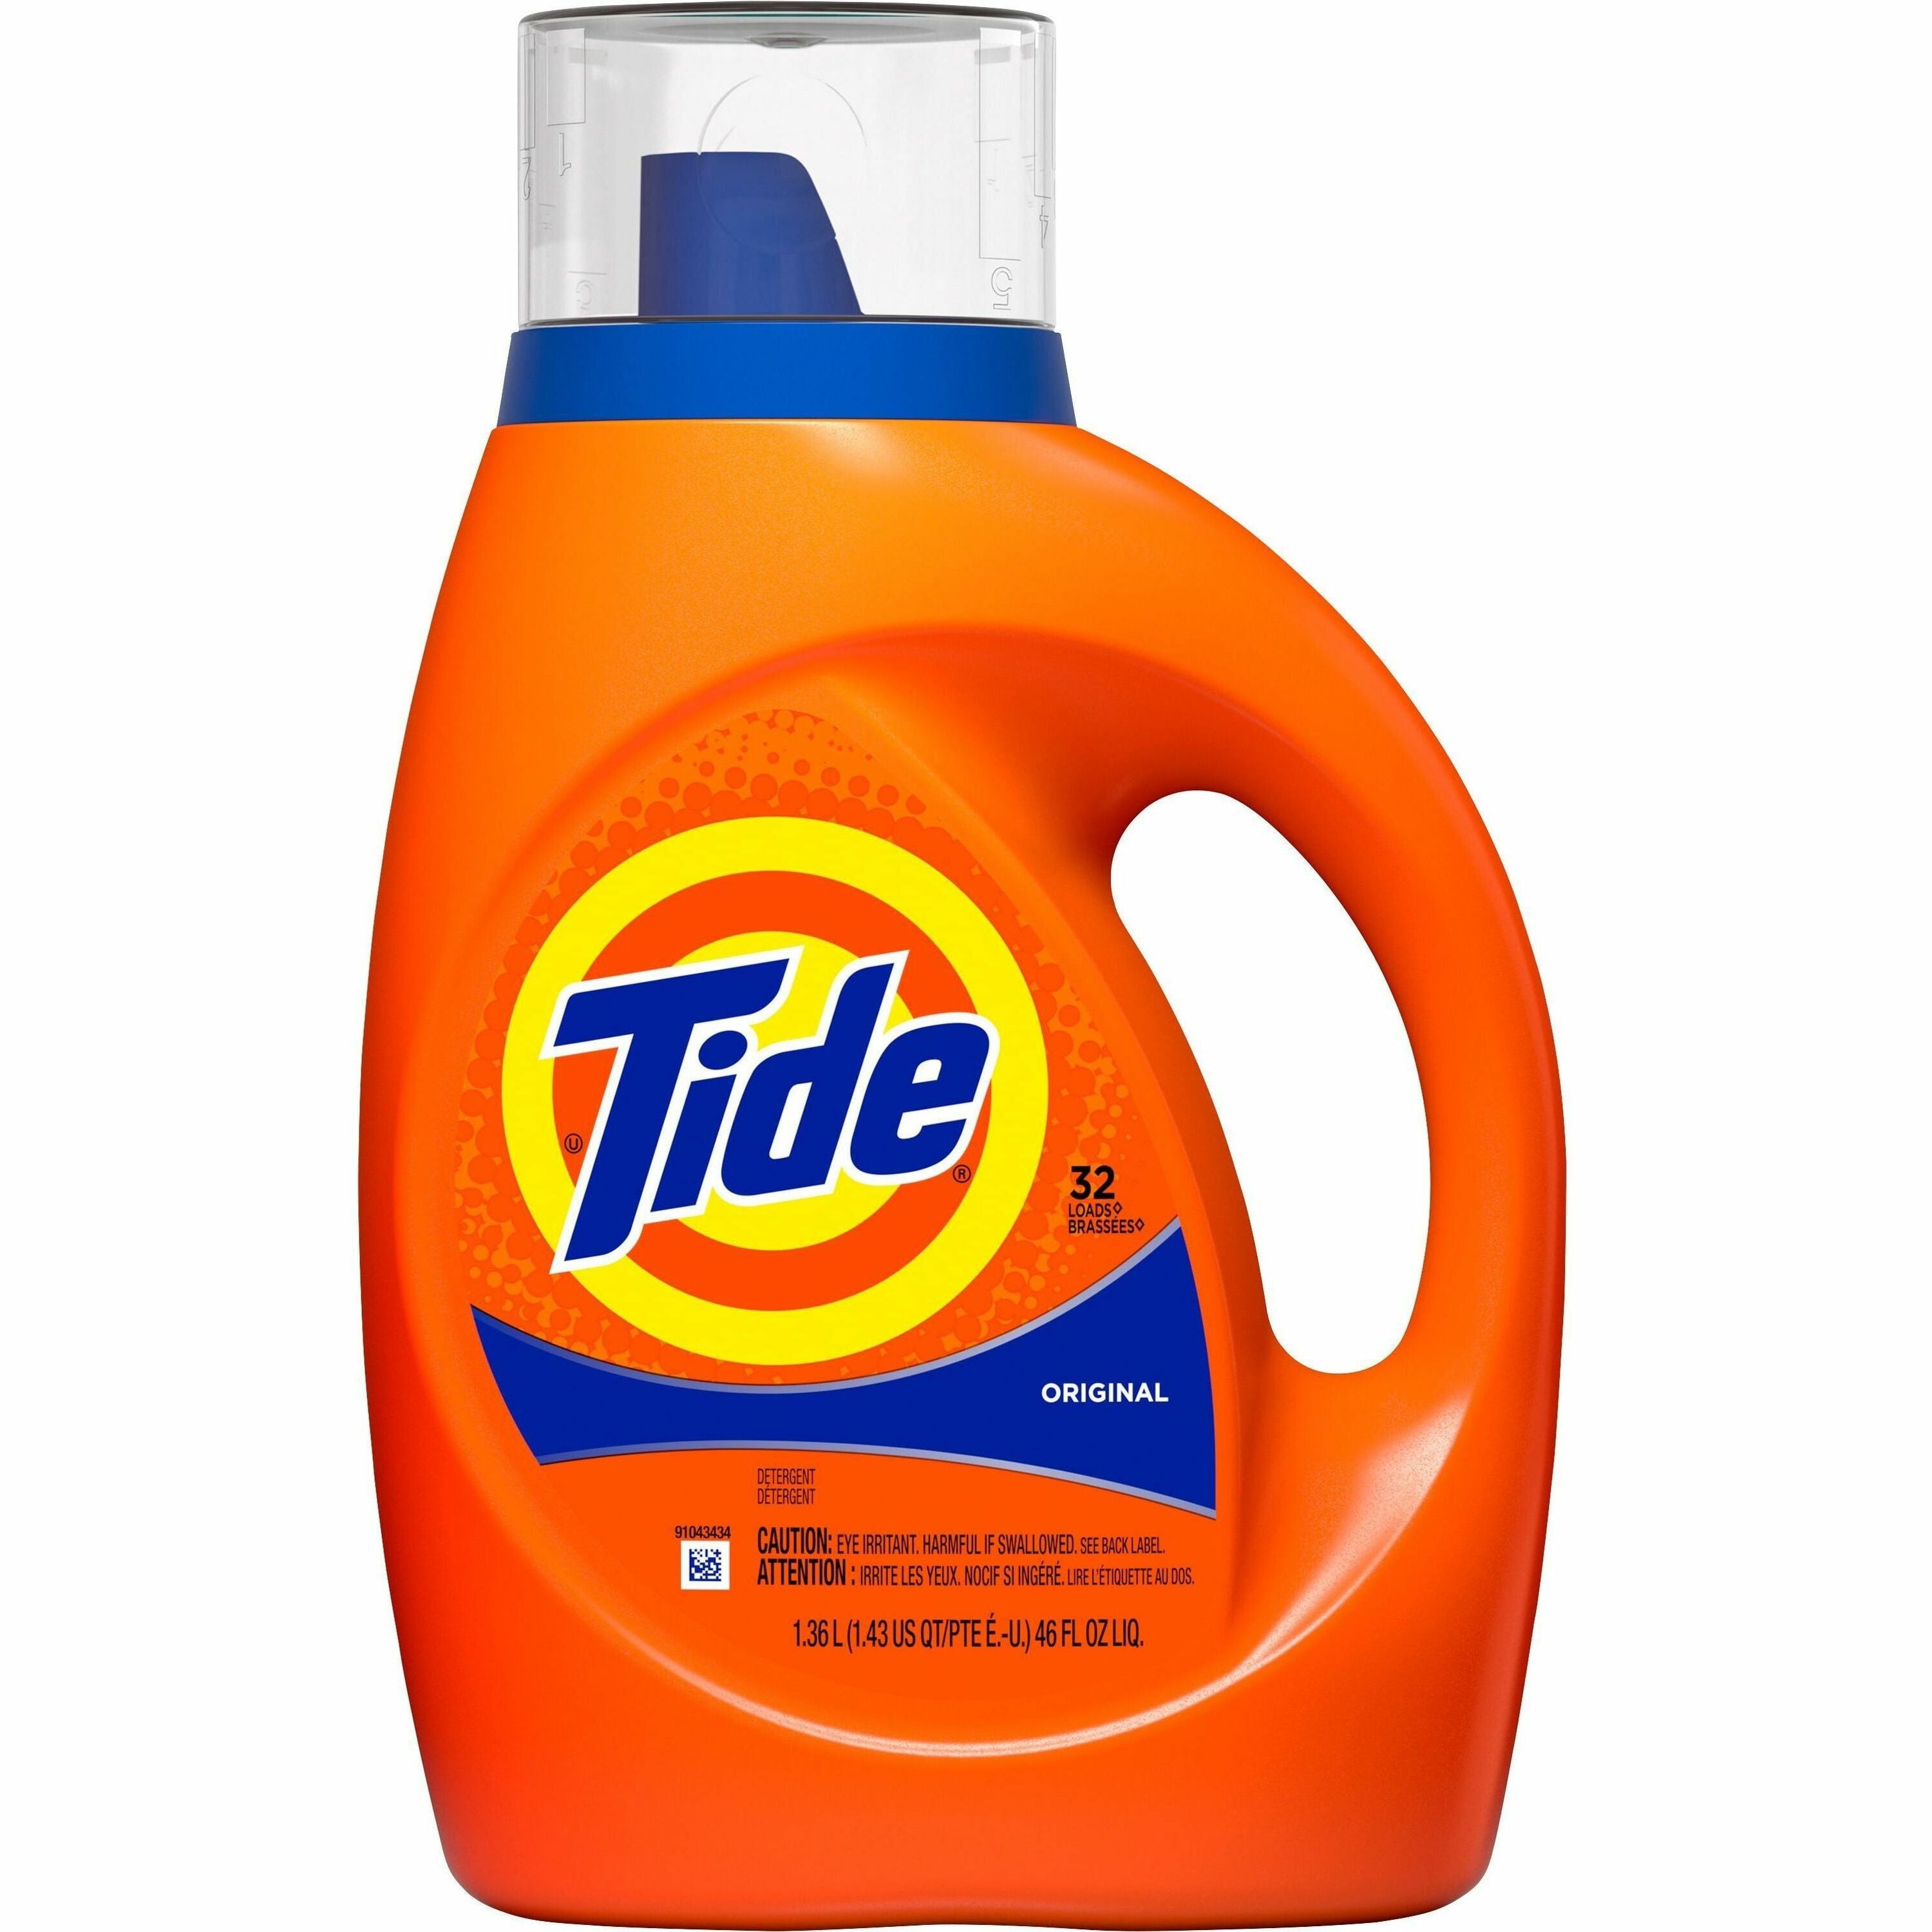 tide-original-laundry-detergent-concentrate-46-fl-oz-14-quart-original-scent-1-bottle-blue_pgc40213 - 1